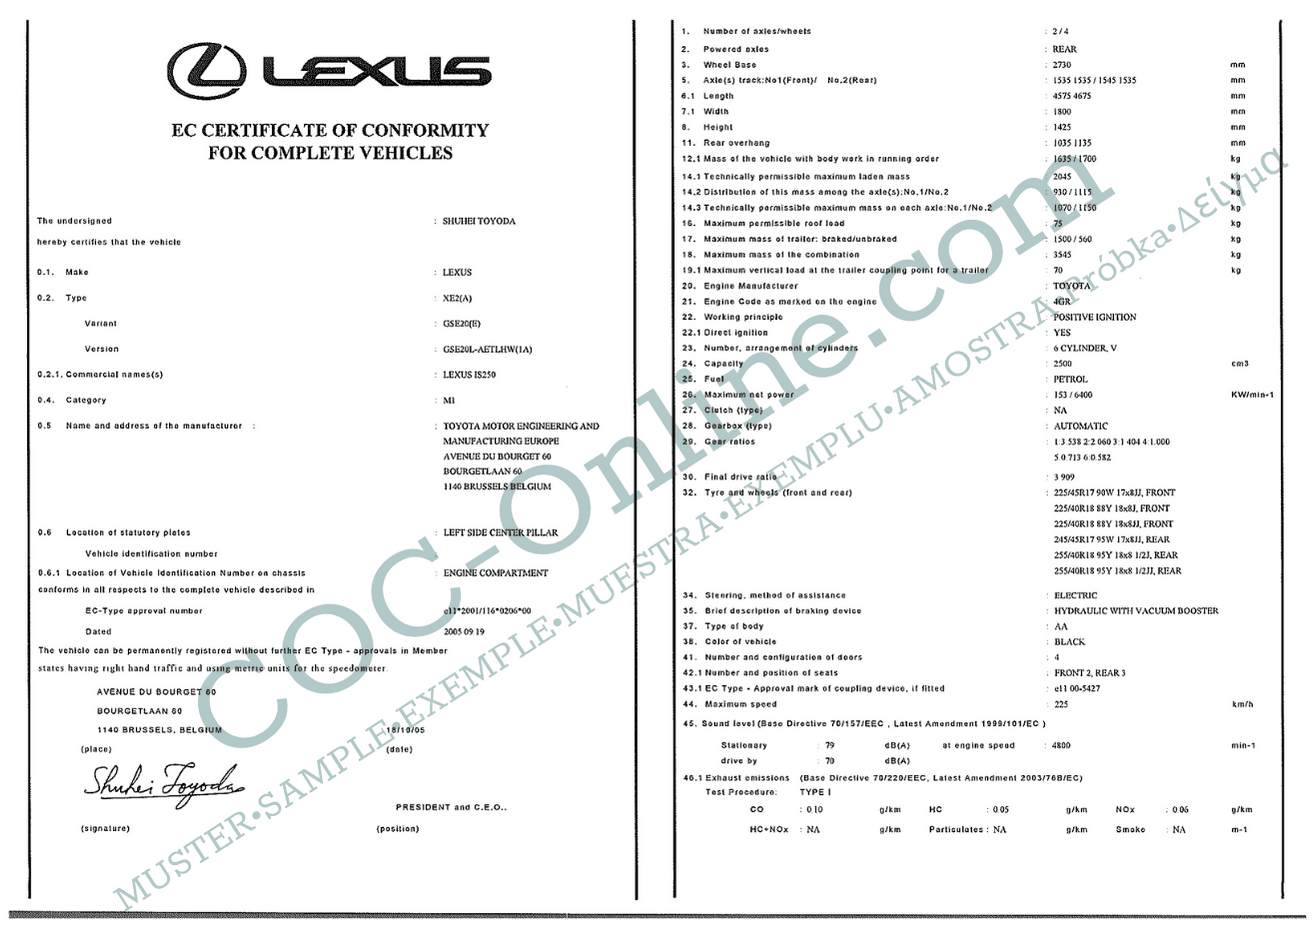 EC Certificate of Conformity LEXUS 2